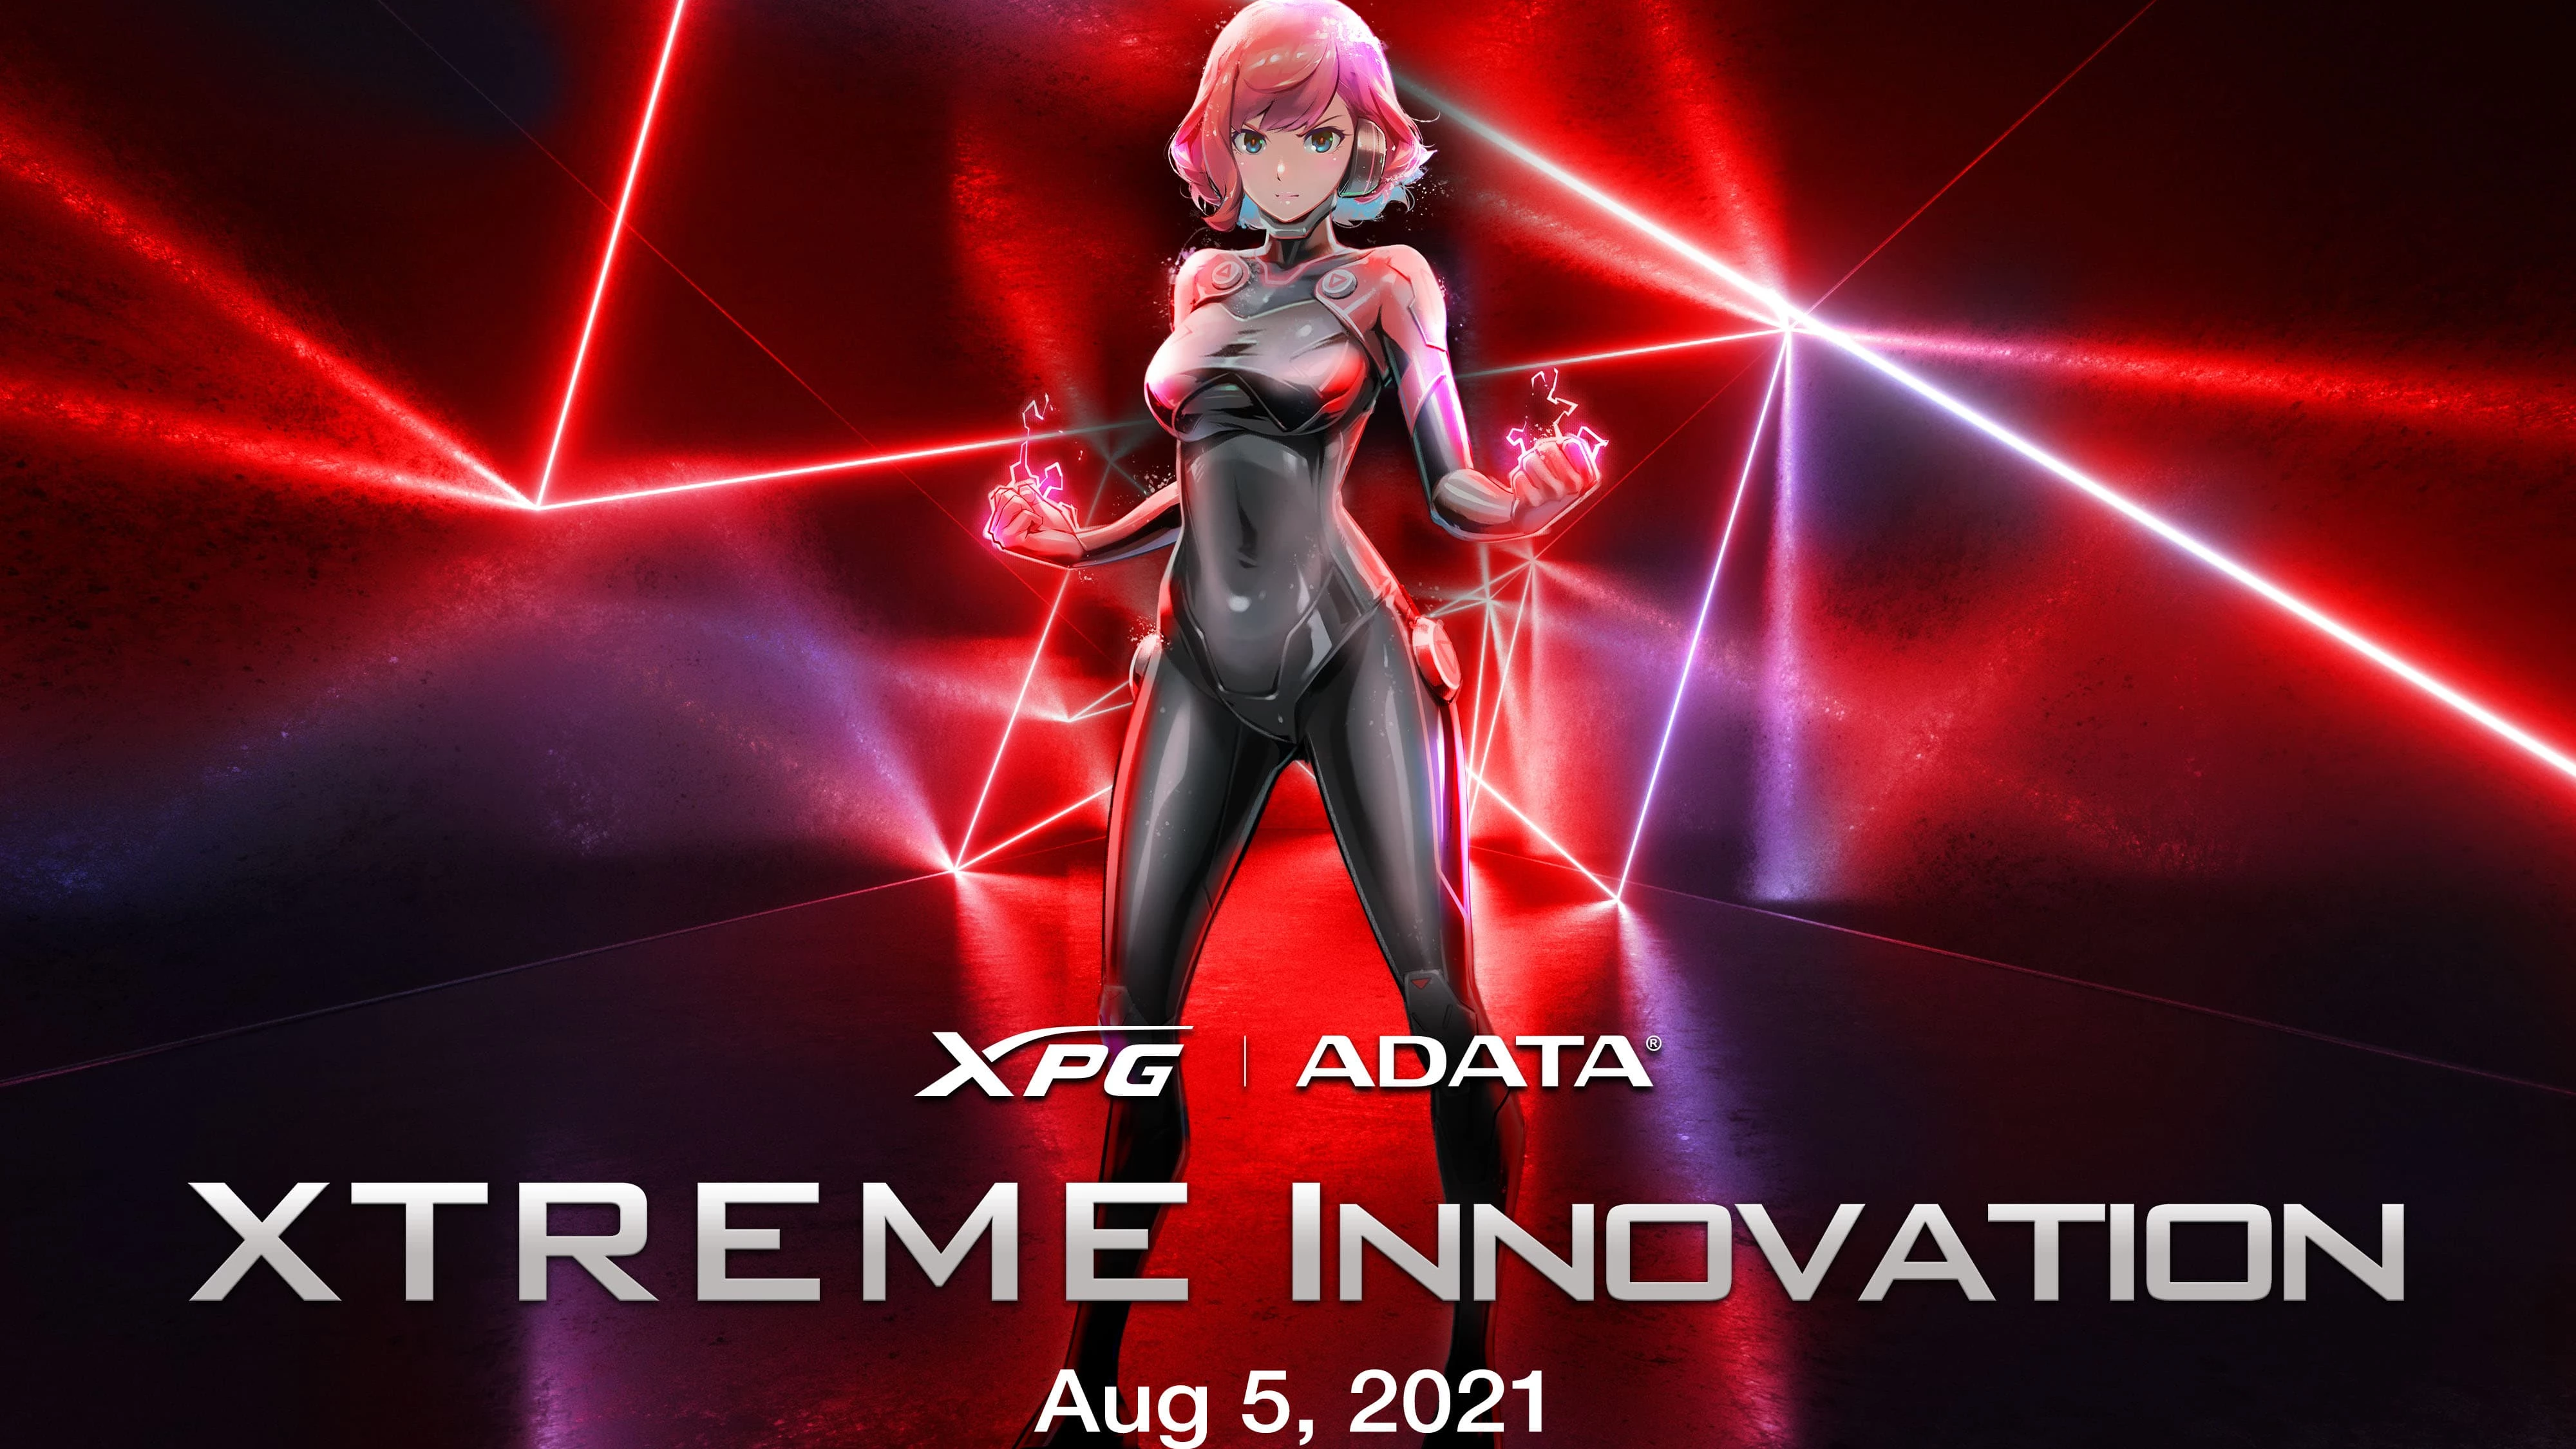 az-adata-bejelentette-xtreme-innovation-termekbemutato-esemenyet-amely-augusztus-5-en-kerul-megrendezesre